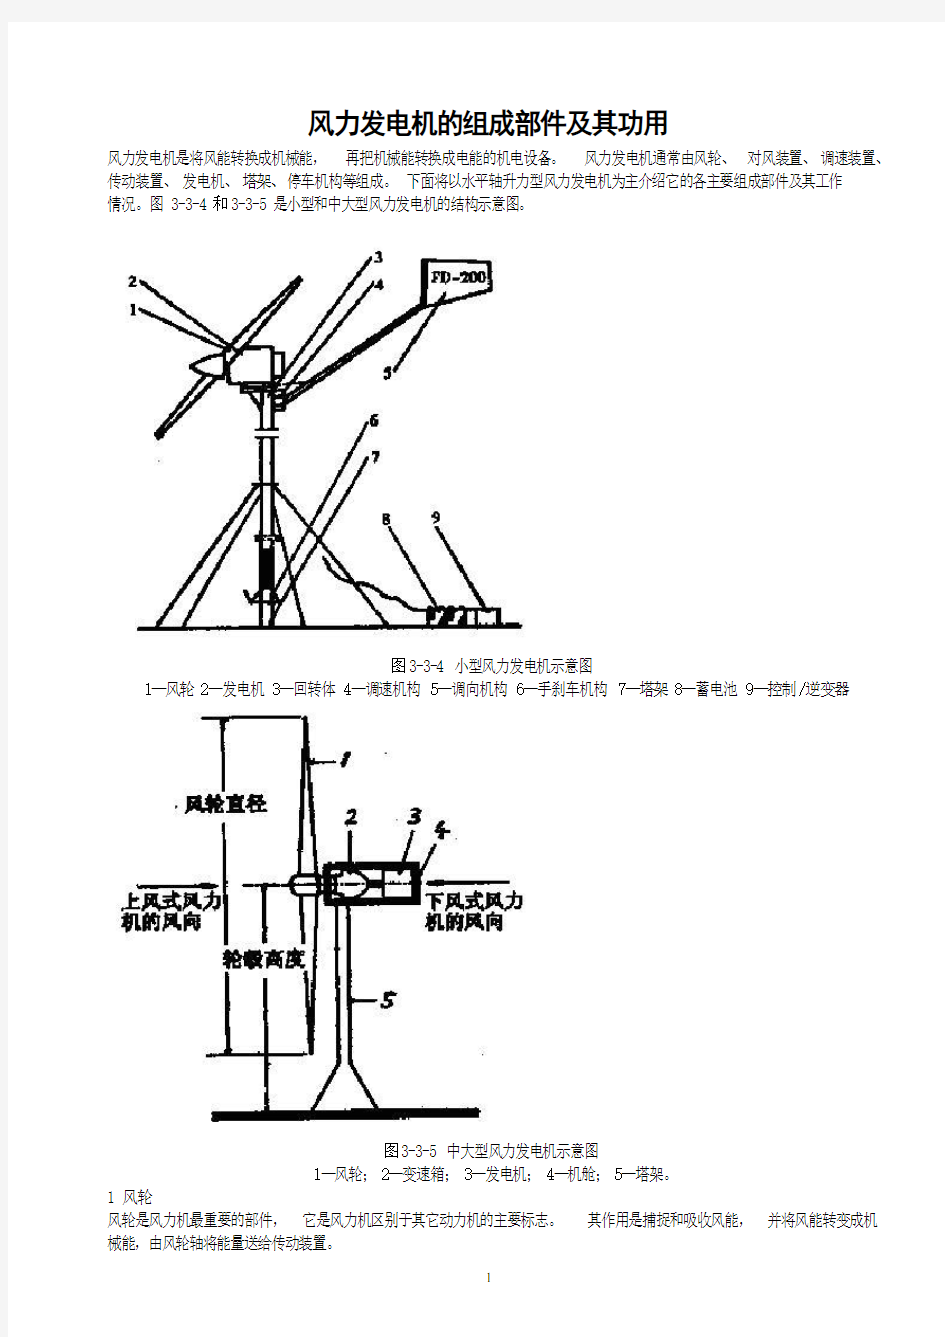 风力发电机的组成部件及其功用